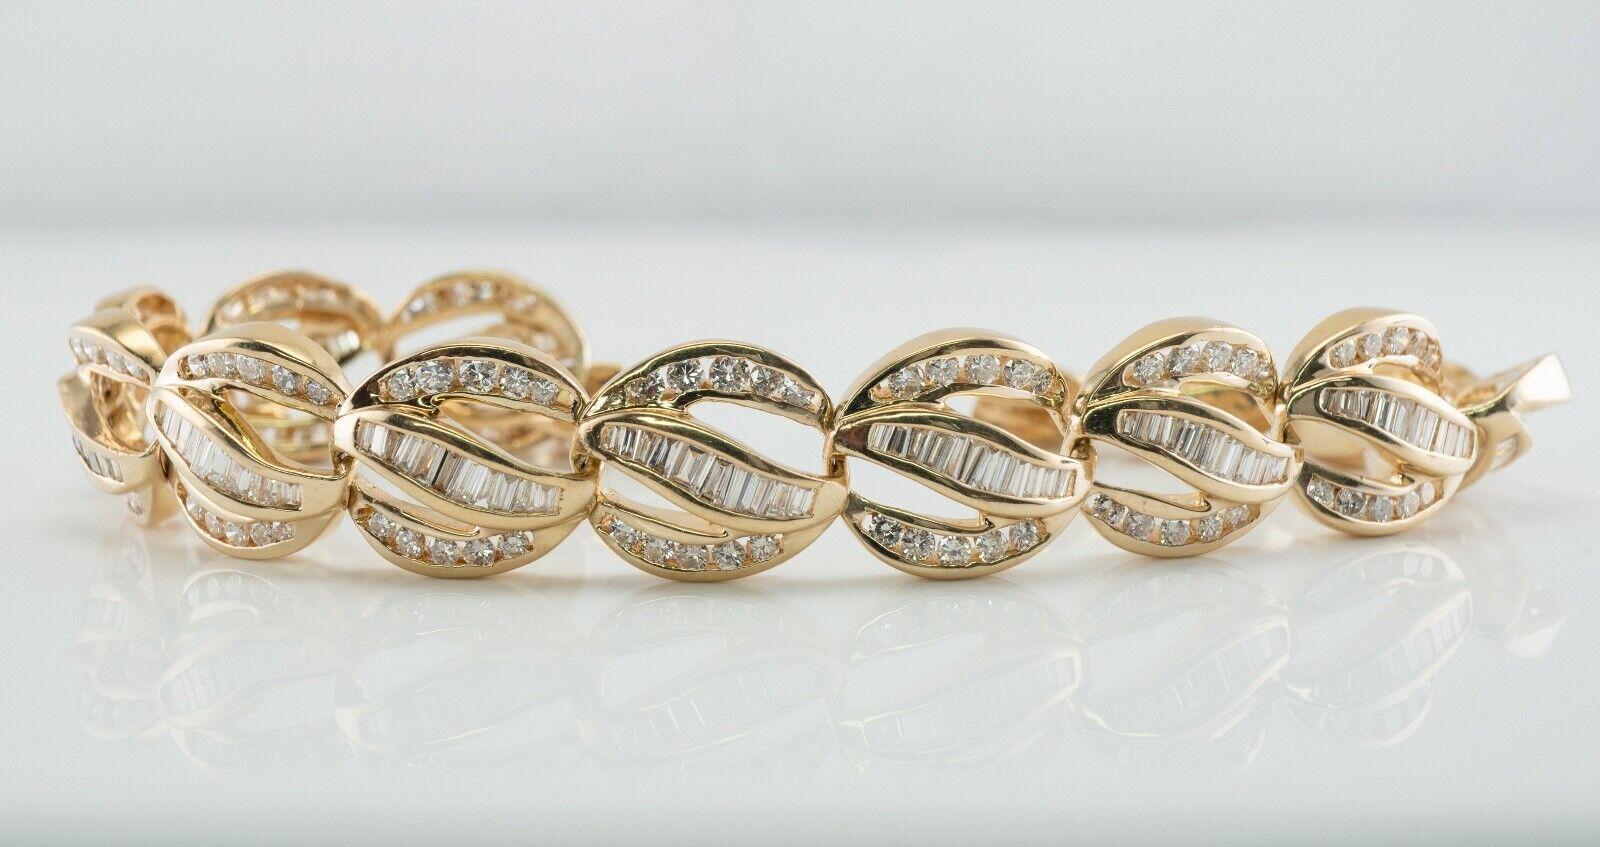 Ce magnifique bracelet de propriété est réalisé en or jaune 18 carats massif et serti de diamants blancs et de diamants de feu. Quatorze maillons accueillent 10 diamants ronds de taille brillant et 12 diamants sertis en canal. Le grand total de tous